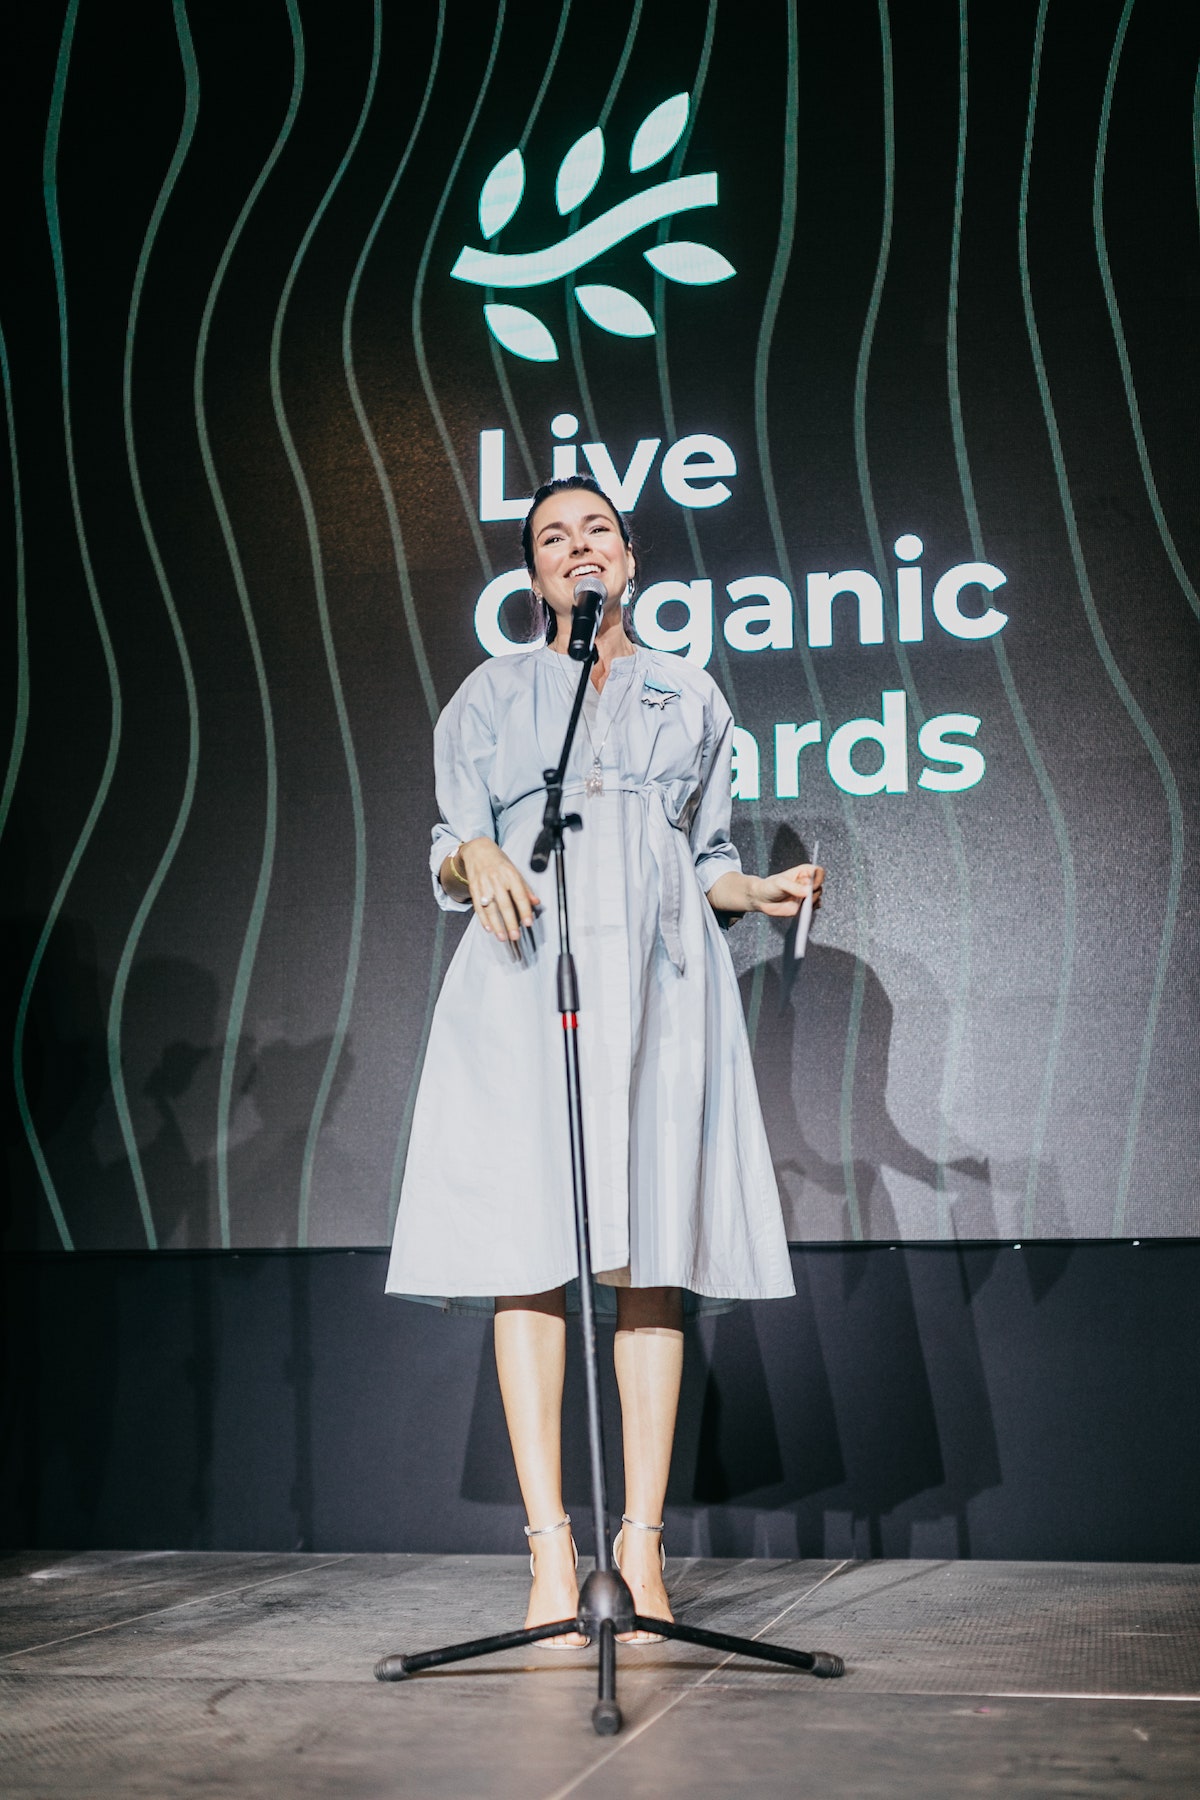 Ирена Понарошку Марика Кравцова Дарья Лисиченко и другие звезды на церемонии Live Organic Awards 2018